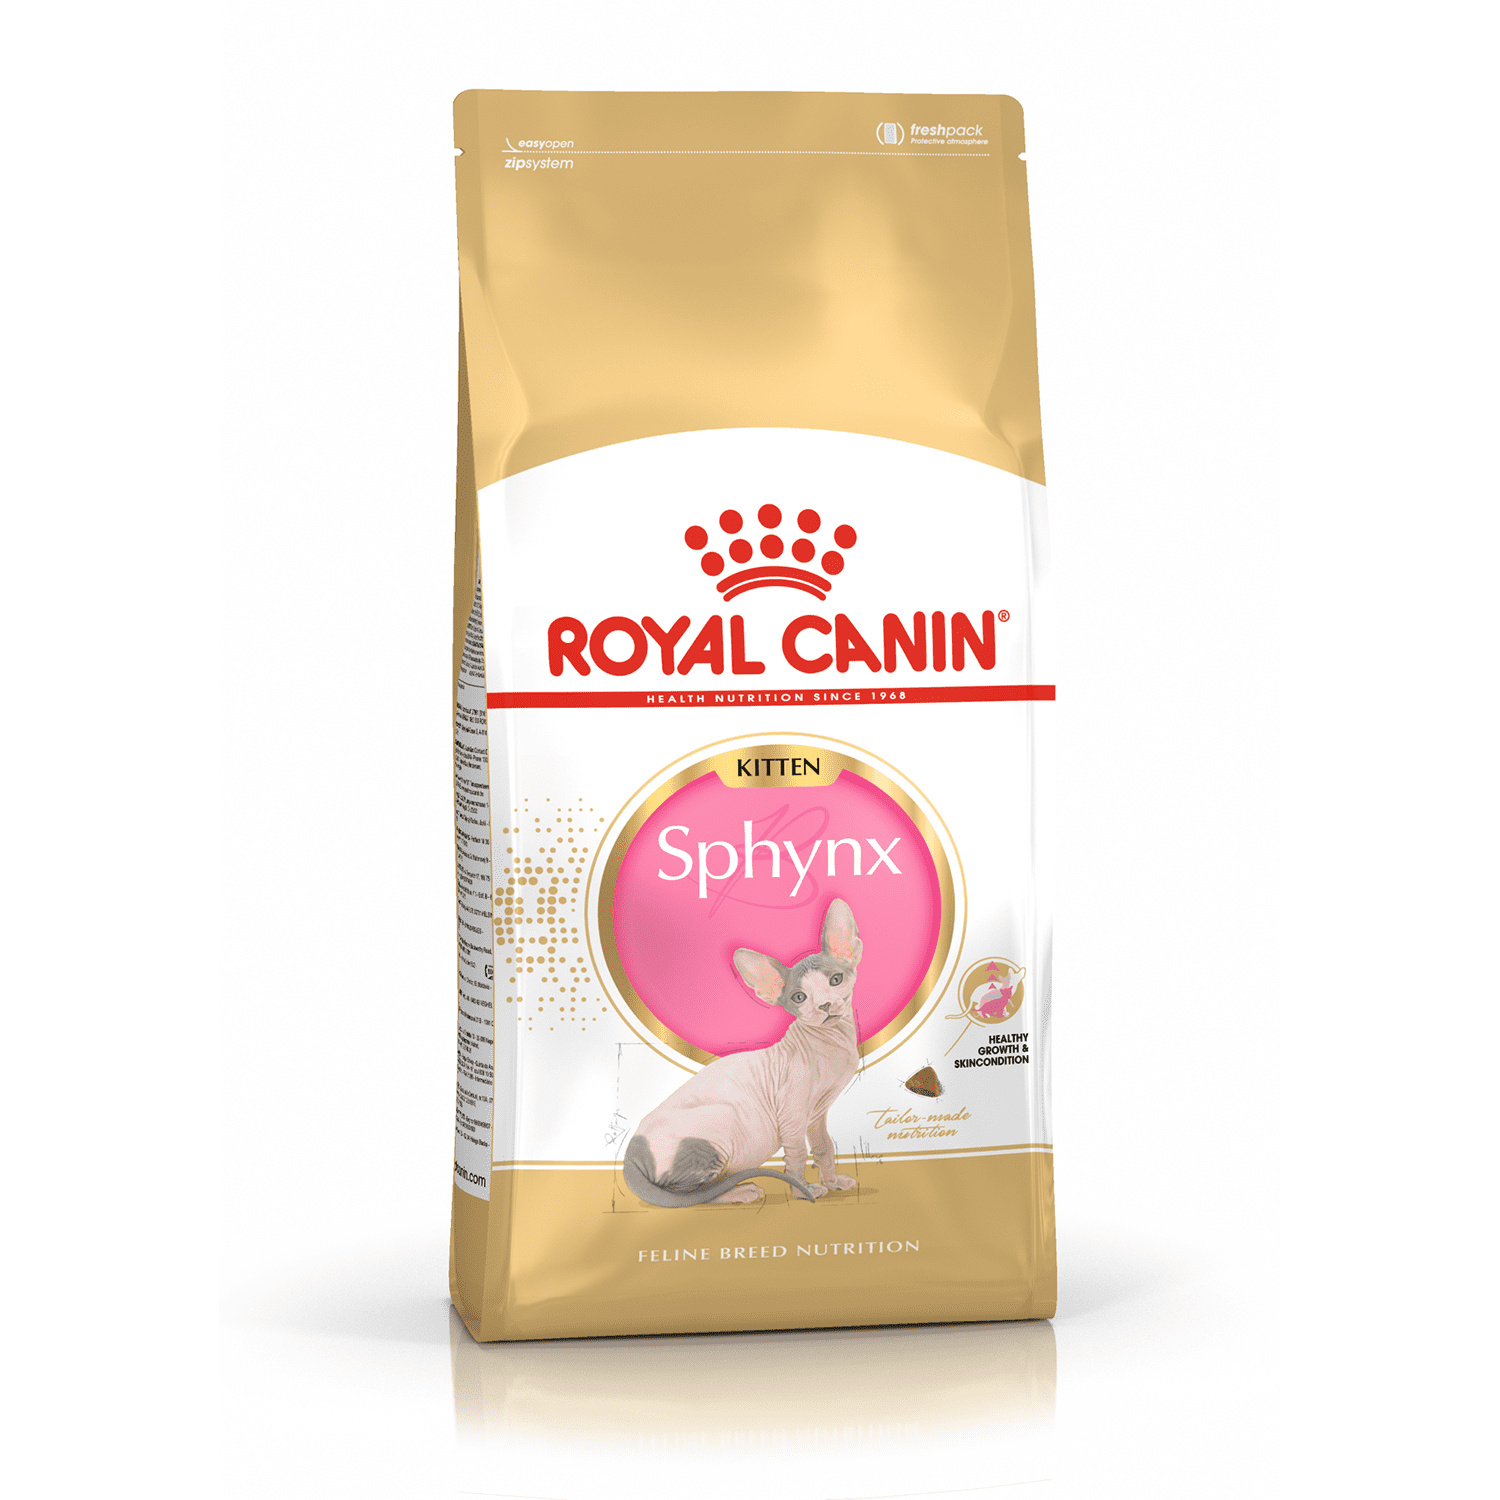 Royal Canin Корм Royal Canin для котят породы сфинкс: от 4 месяцев до 1 года (400 г) royal canin корм royal canin для котят породы сфинкс от 4 месяцев до 1 года 400 г